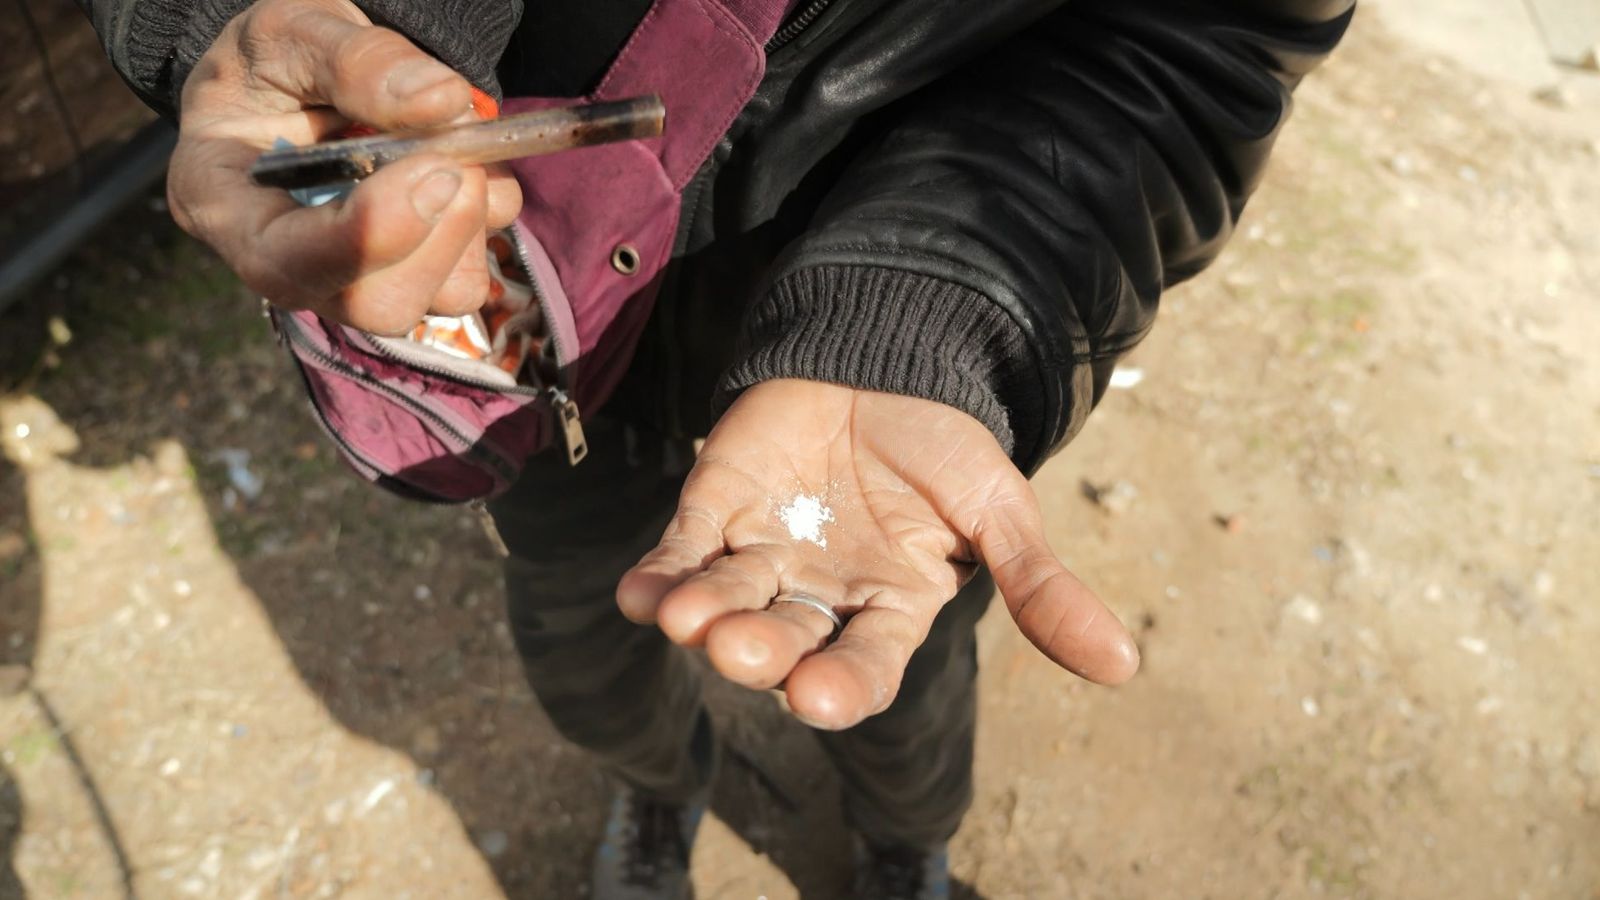 Ксилазин: Мощен „зомби наркотик“, известен като Tranq, е „проникнал“ на пазара в Обединеното кралство, предупреждават експерти